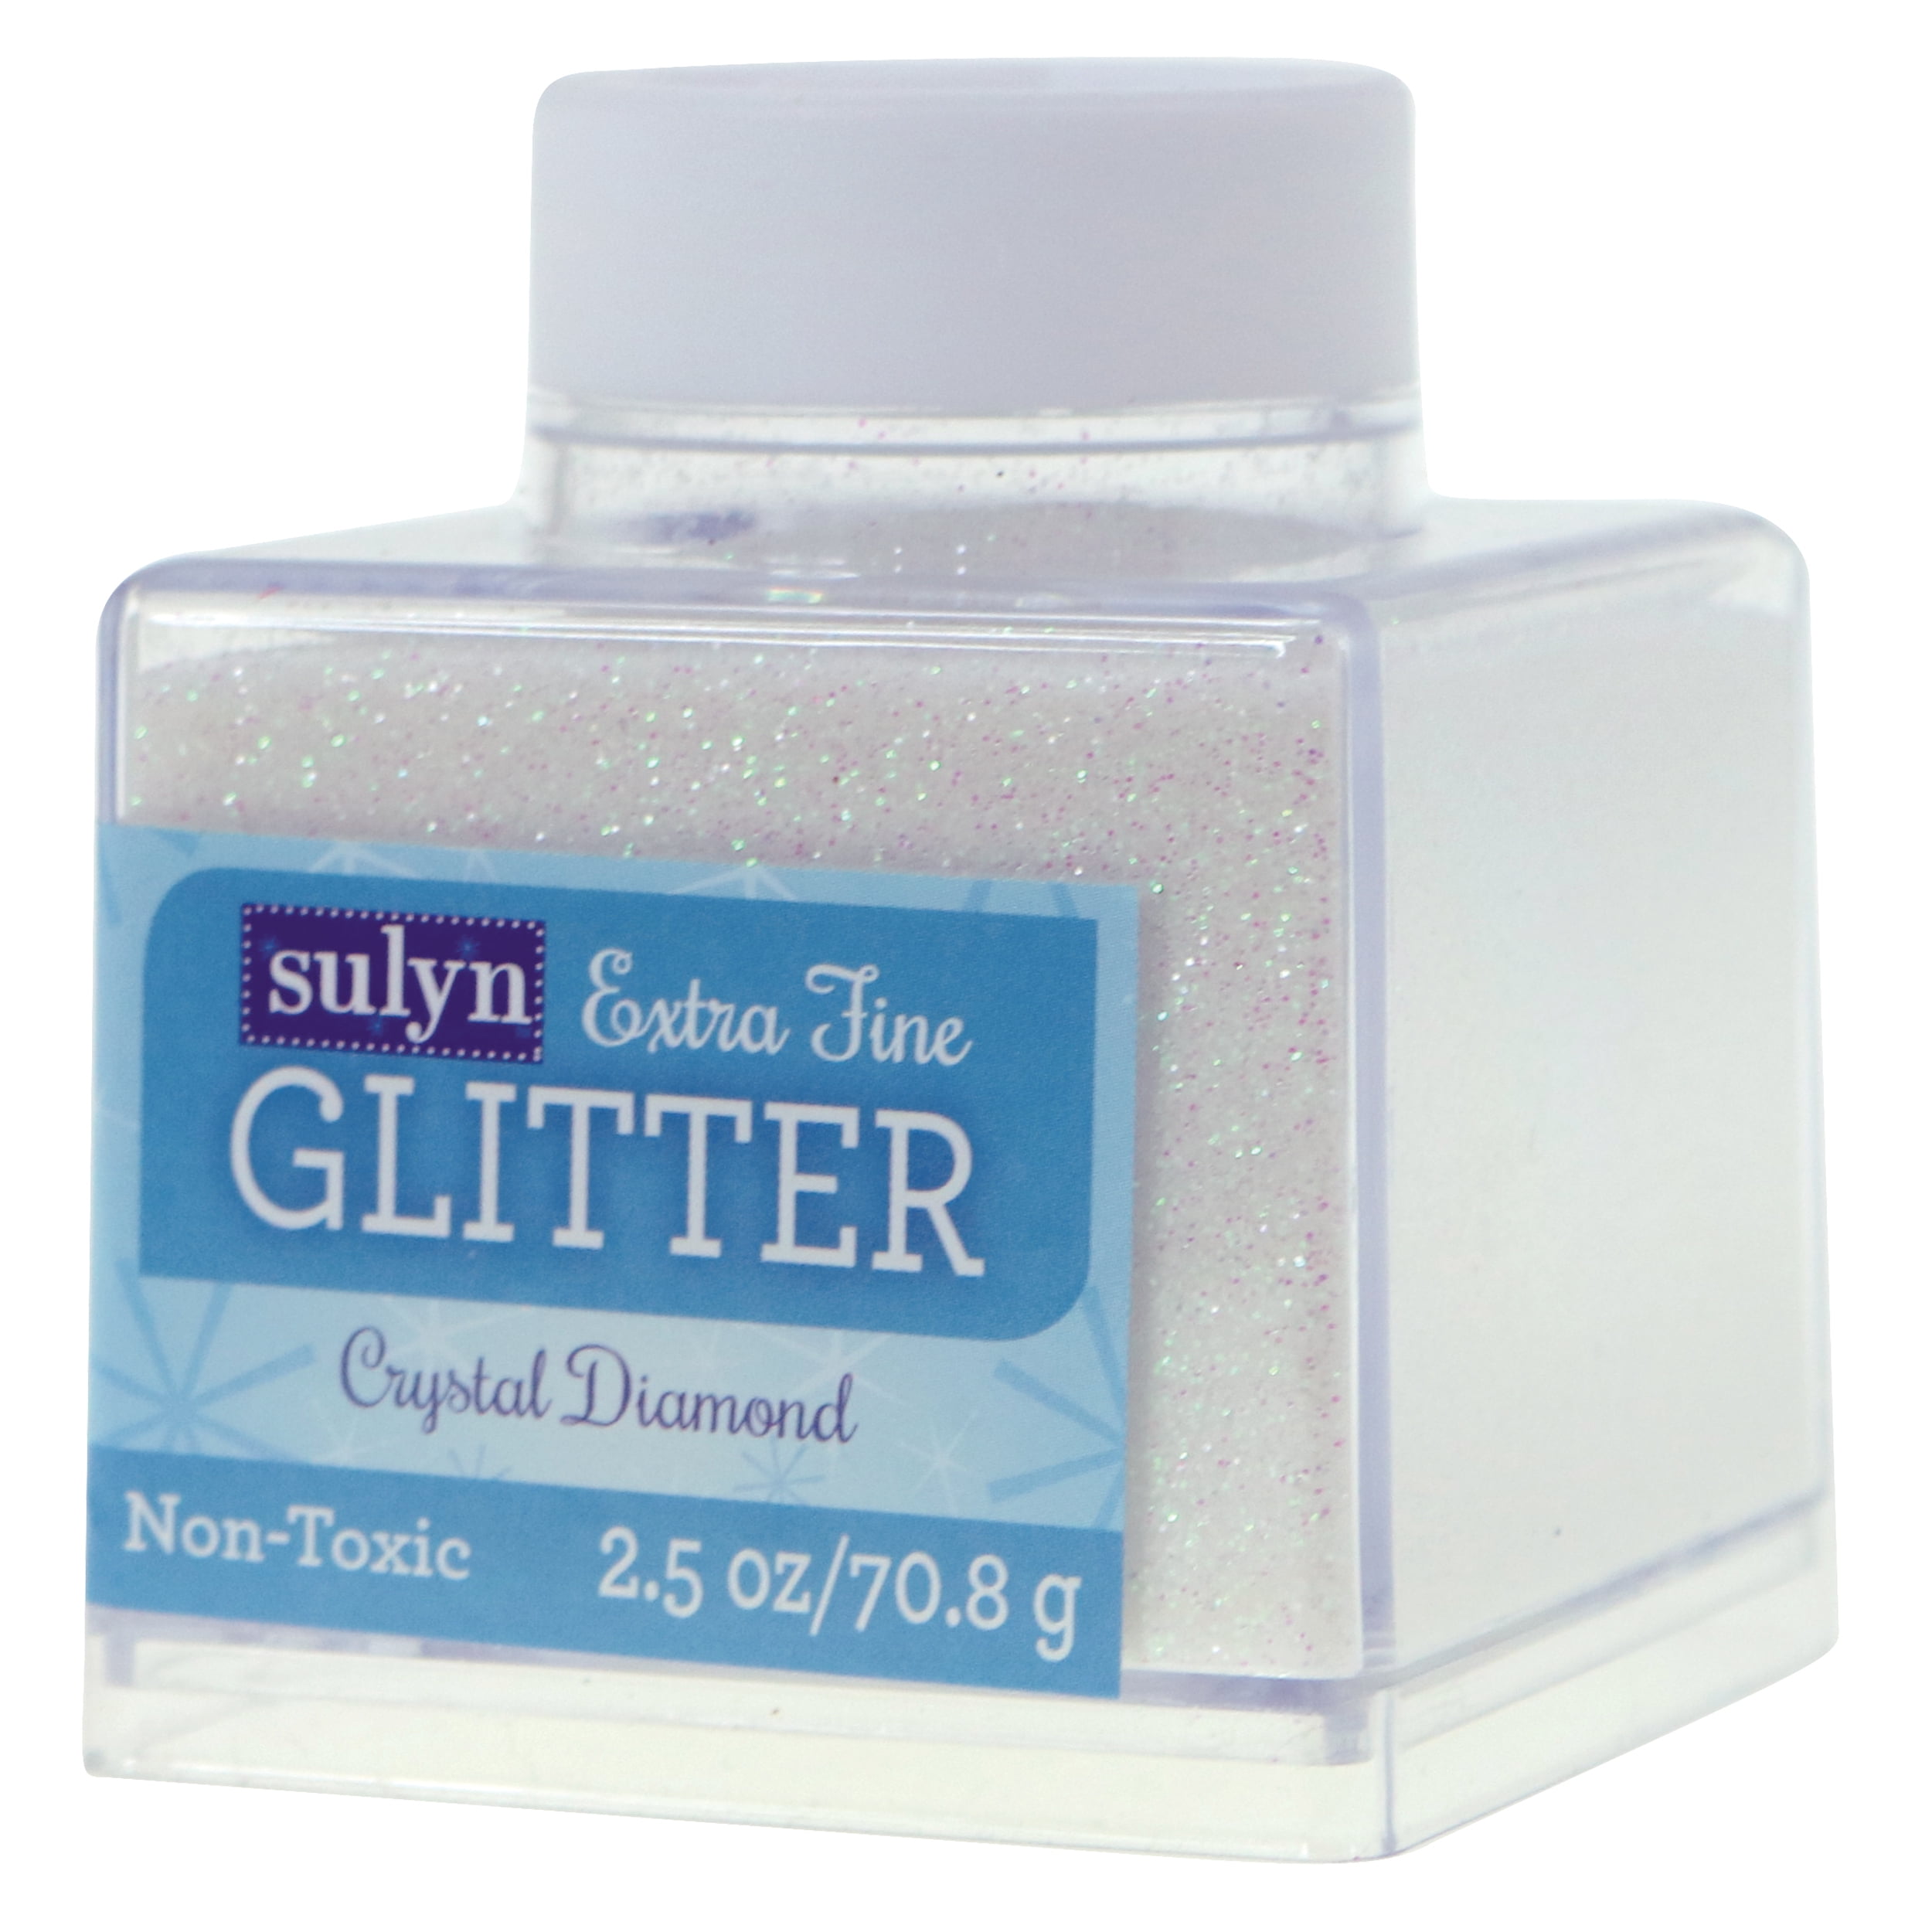 Sulyn Extra Fine Crystal Diamond Glitter - 2.5 oz